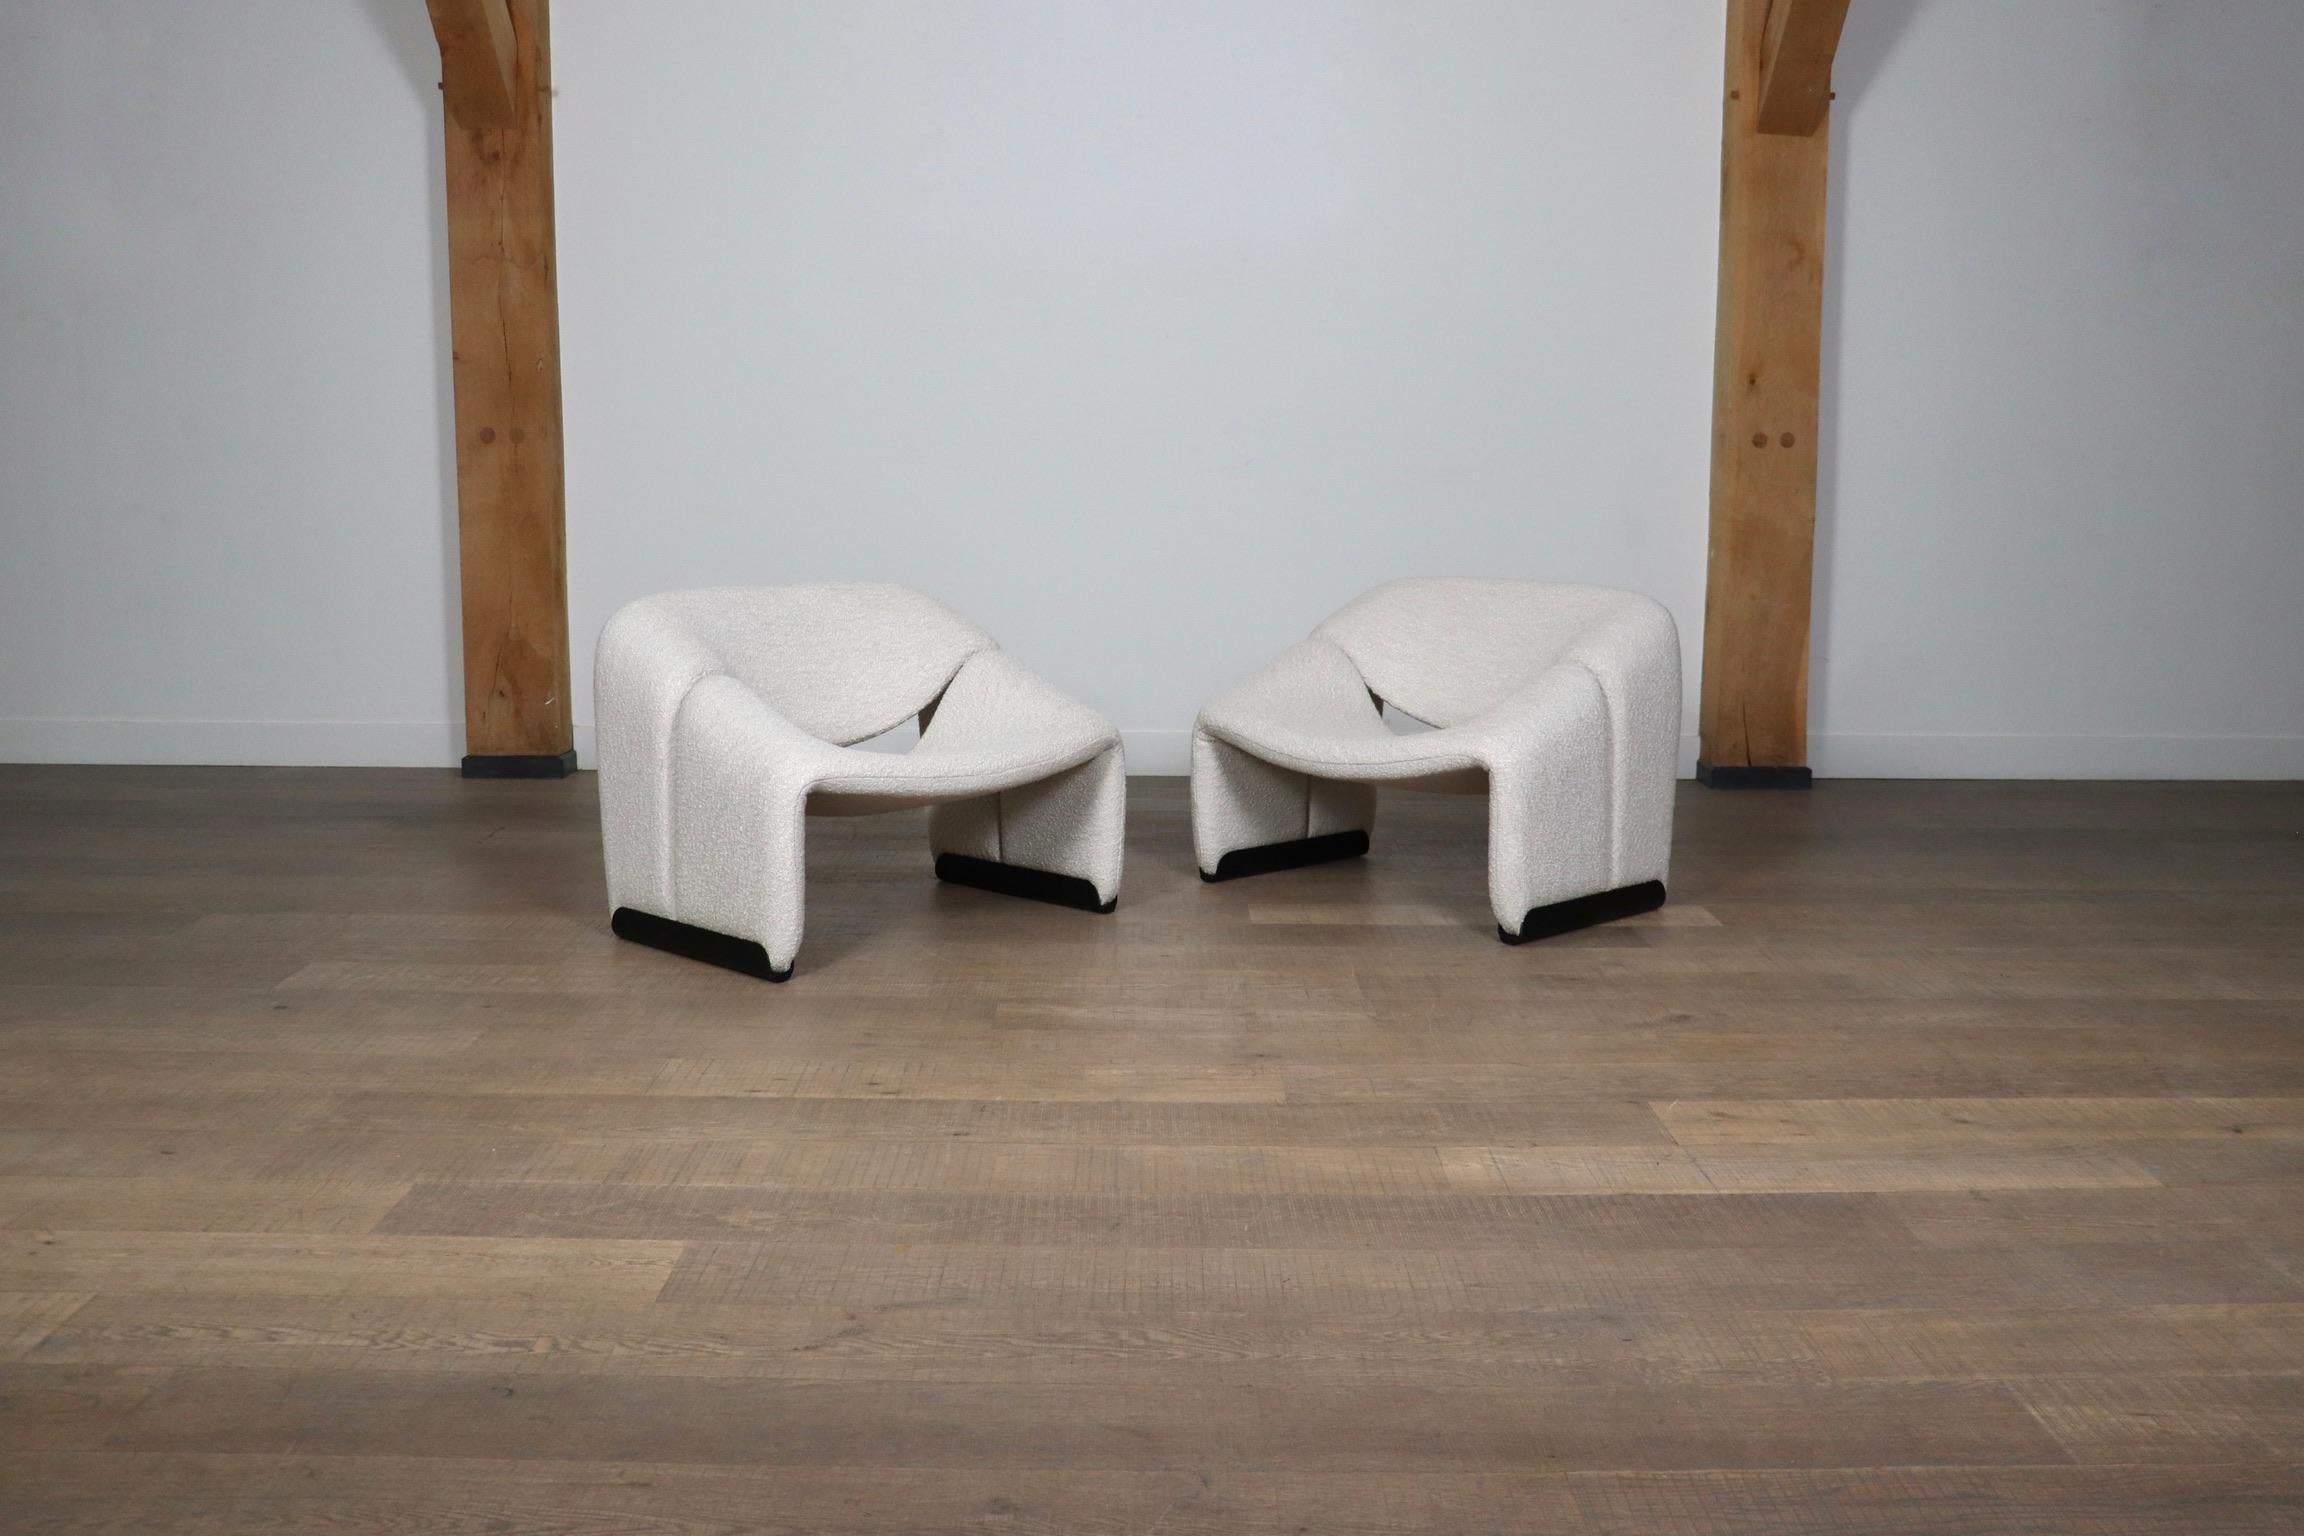 Fantastisches Paar Artifort F598 Lounge Chairs von Pierre Paulin aus dem Jahr 1973. Dieses Modell ist aufgrund seiner charakteristischen Form auch als 